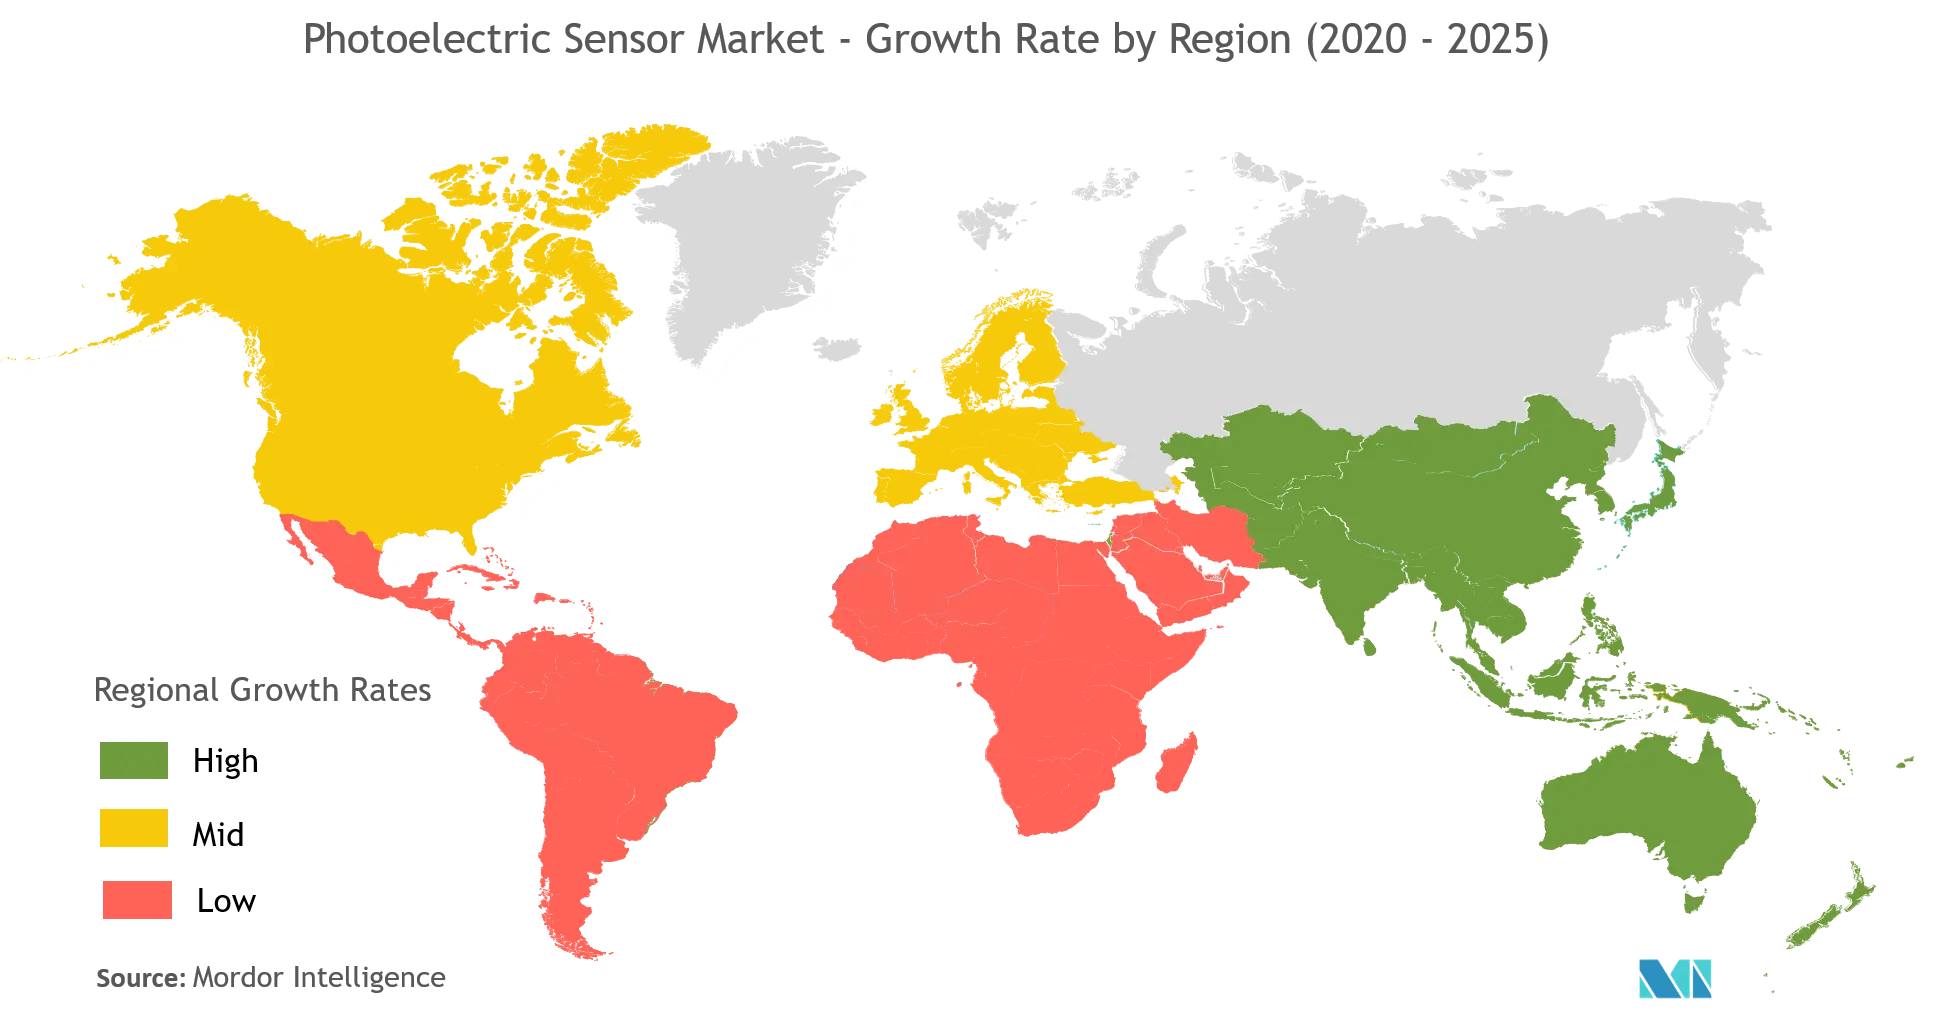 Wachstum des Marktes für fotoelektrische Sensoren